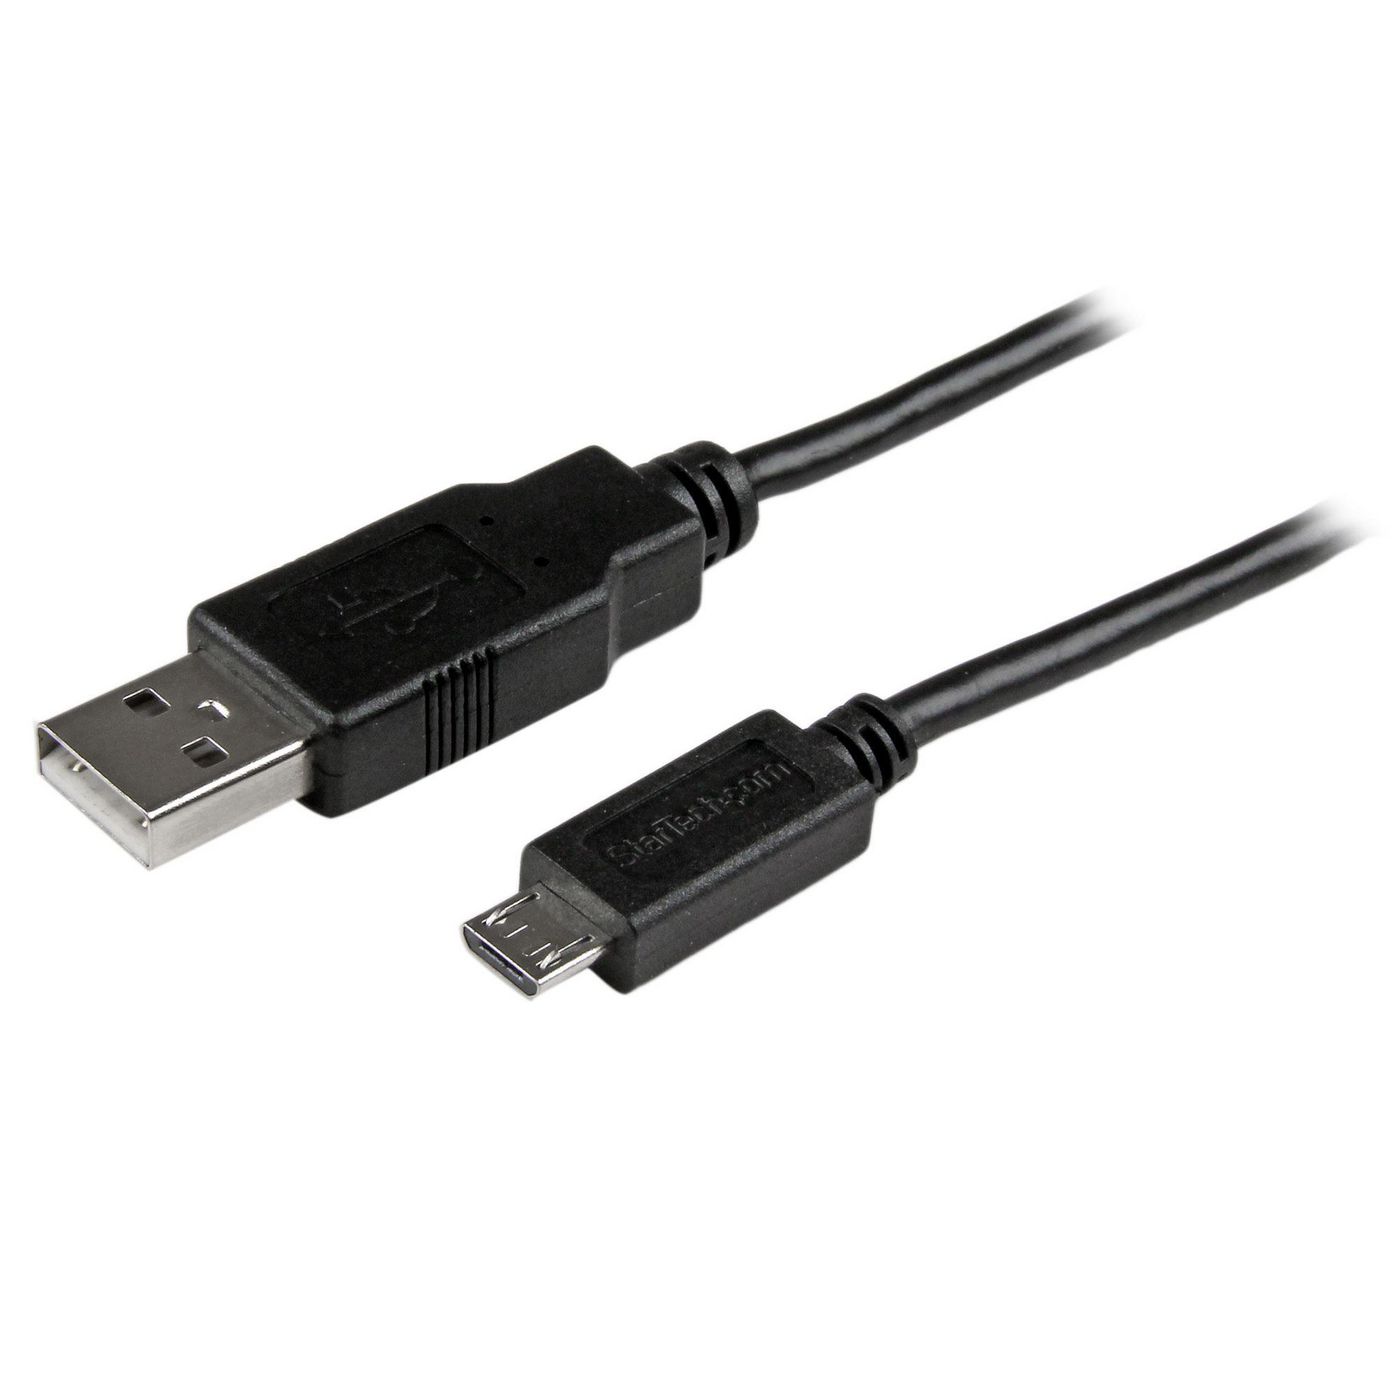 STARTECH.COM 3m Micro USB Ladekabel für Smartphones und Tablets - USB A auf Micro B Kabel / Datenkab